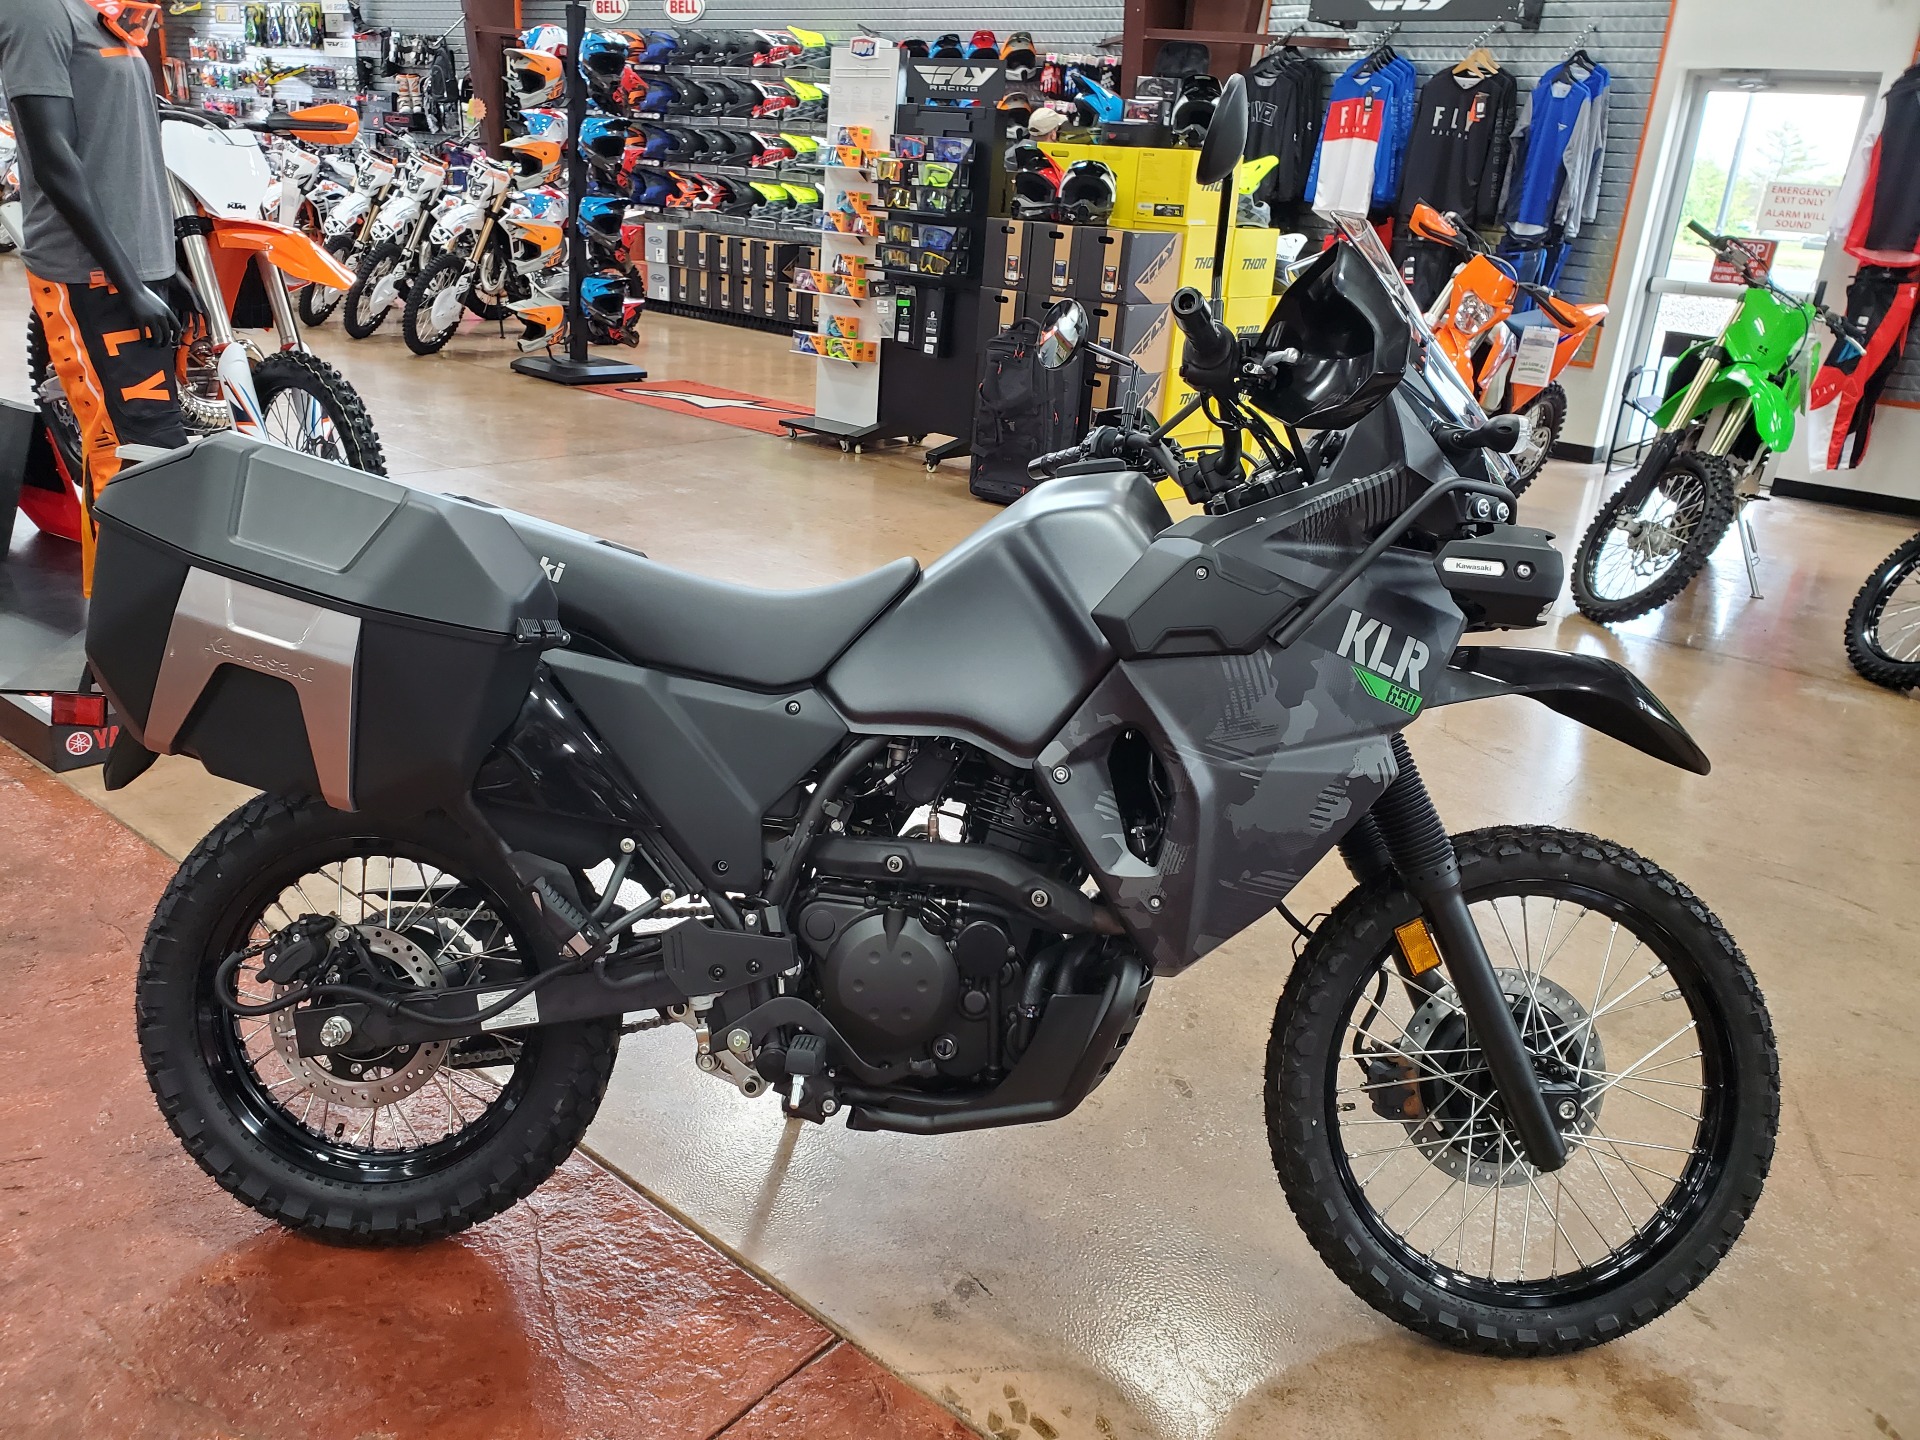 New 2022 Kawasaki KLR 650 Adventure Motorcycles in Evansville, IN Stock Number: DA03753